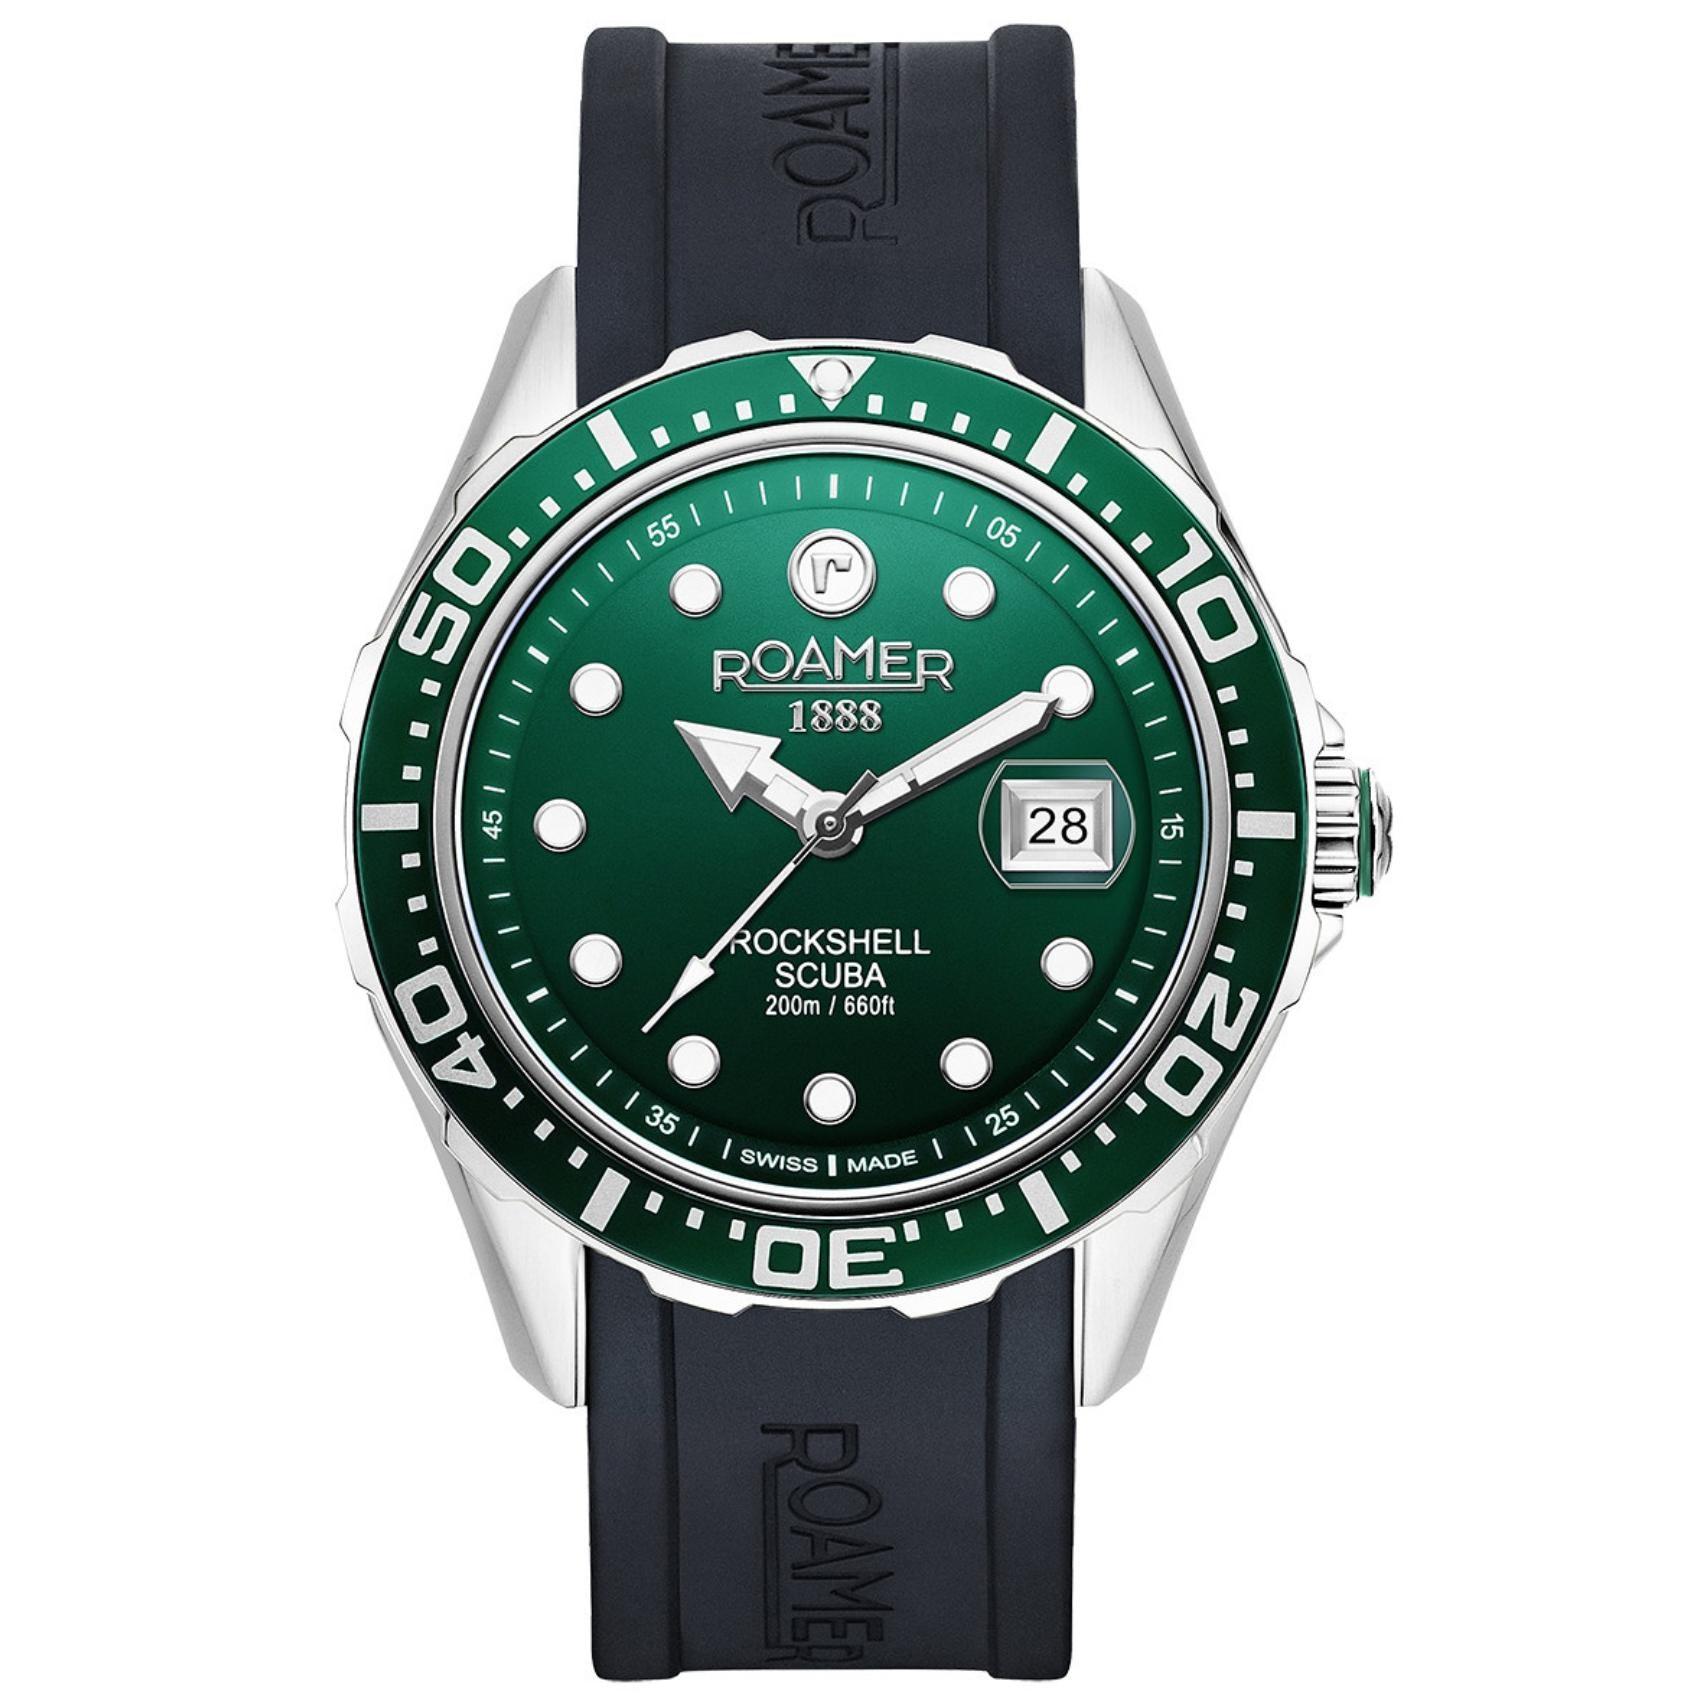 Καταδυτικό ρολόι Rockshell Mark III Scuba 867833-41-75-02 με μαύρο καουτσούκ λουράκι, πράσινο καντράν με τζαμάκι από ζαφείρι και στεφάνι διαμέτρου 45mm αδιάβροχο στα 200M.